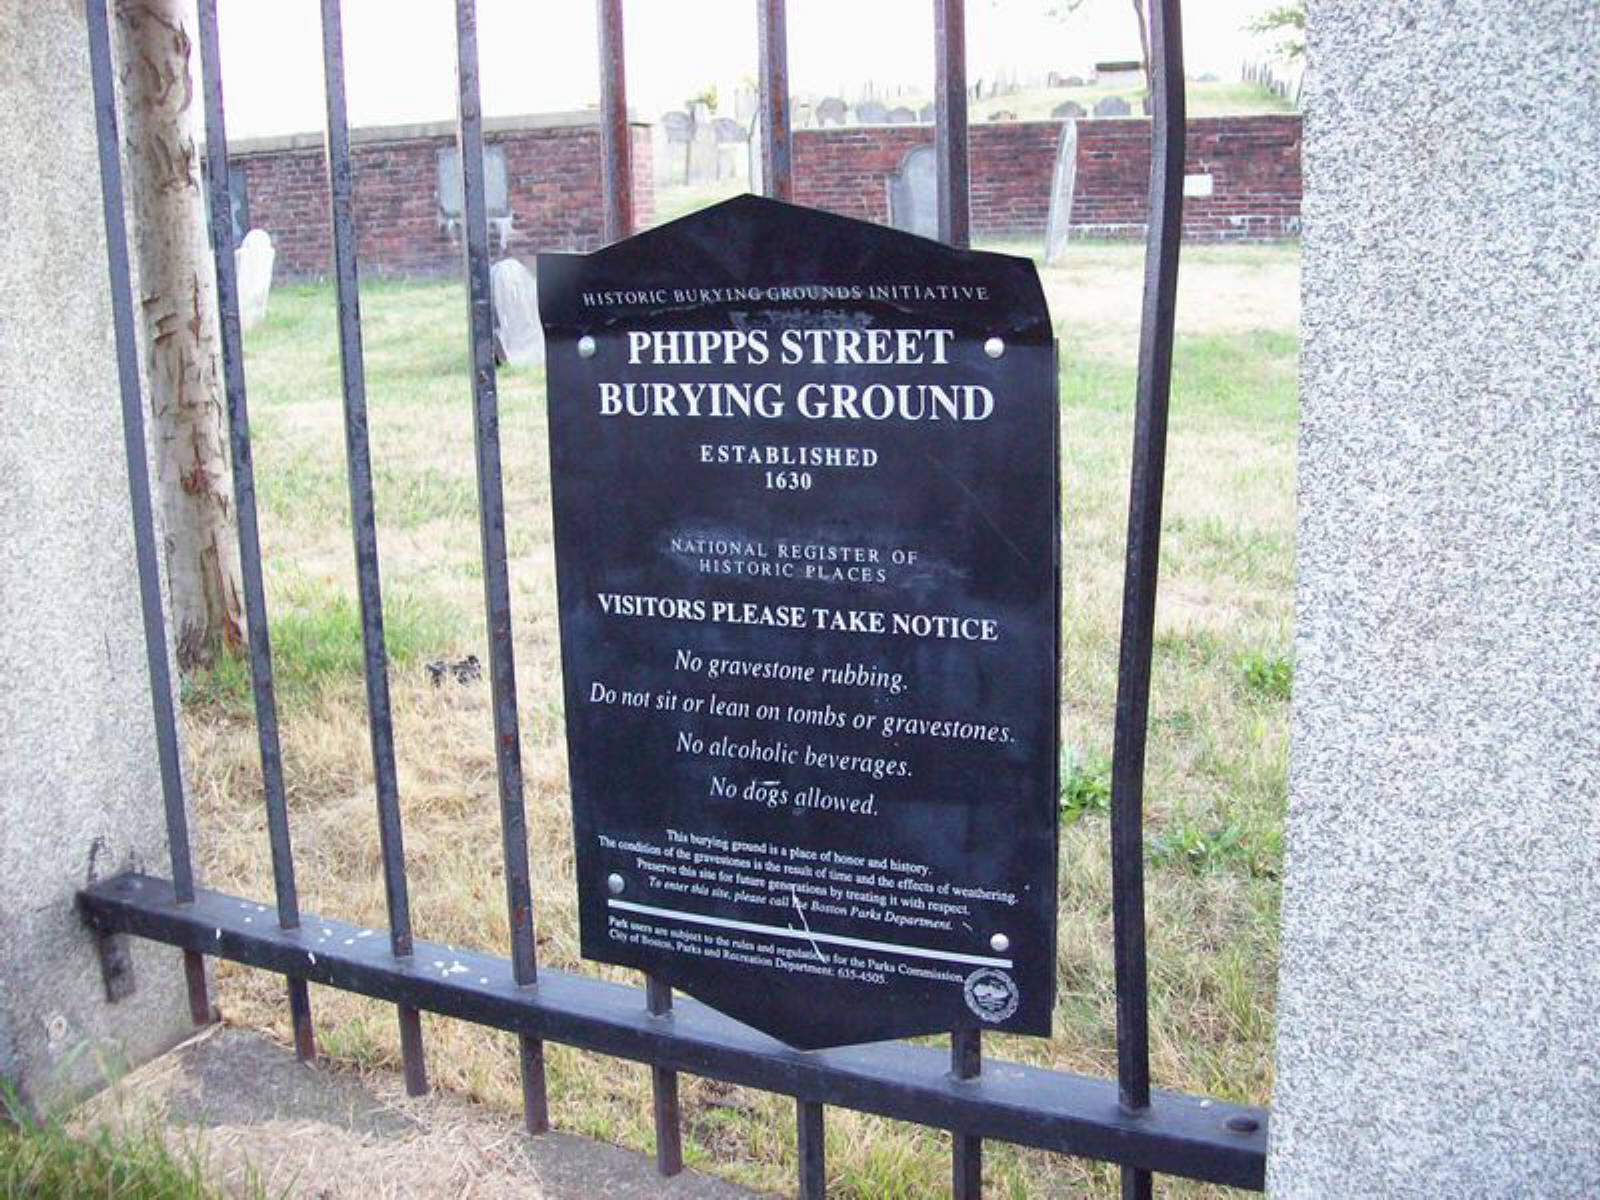 Phipps Street Burying Ground